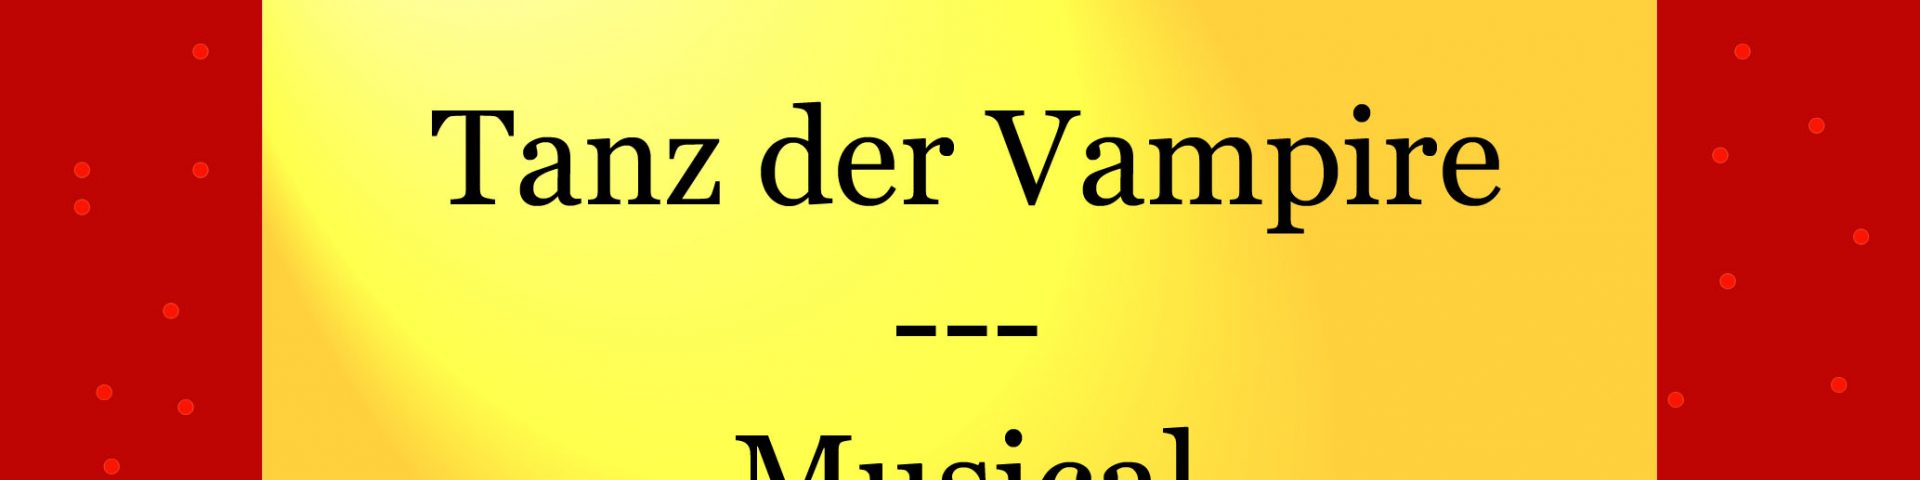 Tanz der Vampire - Musical - kultur4all.de